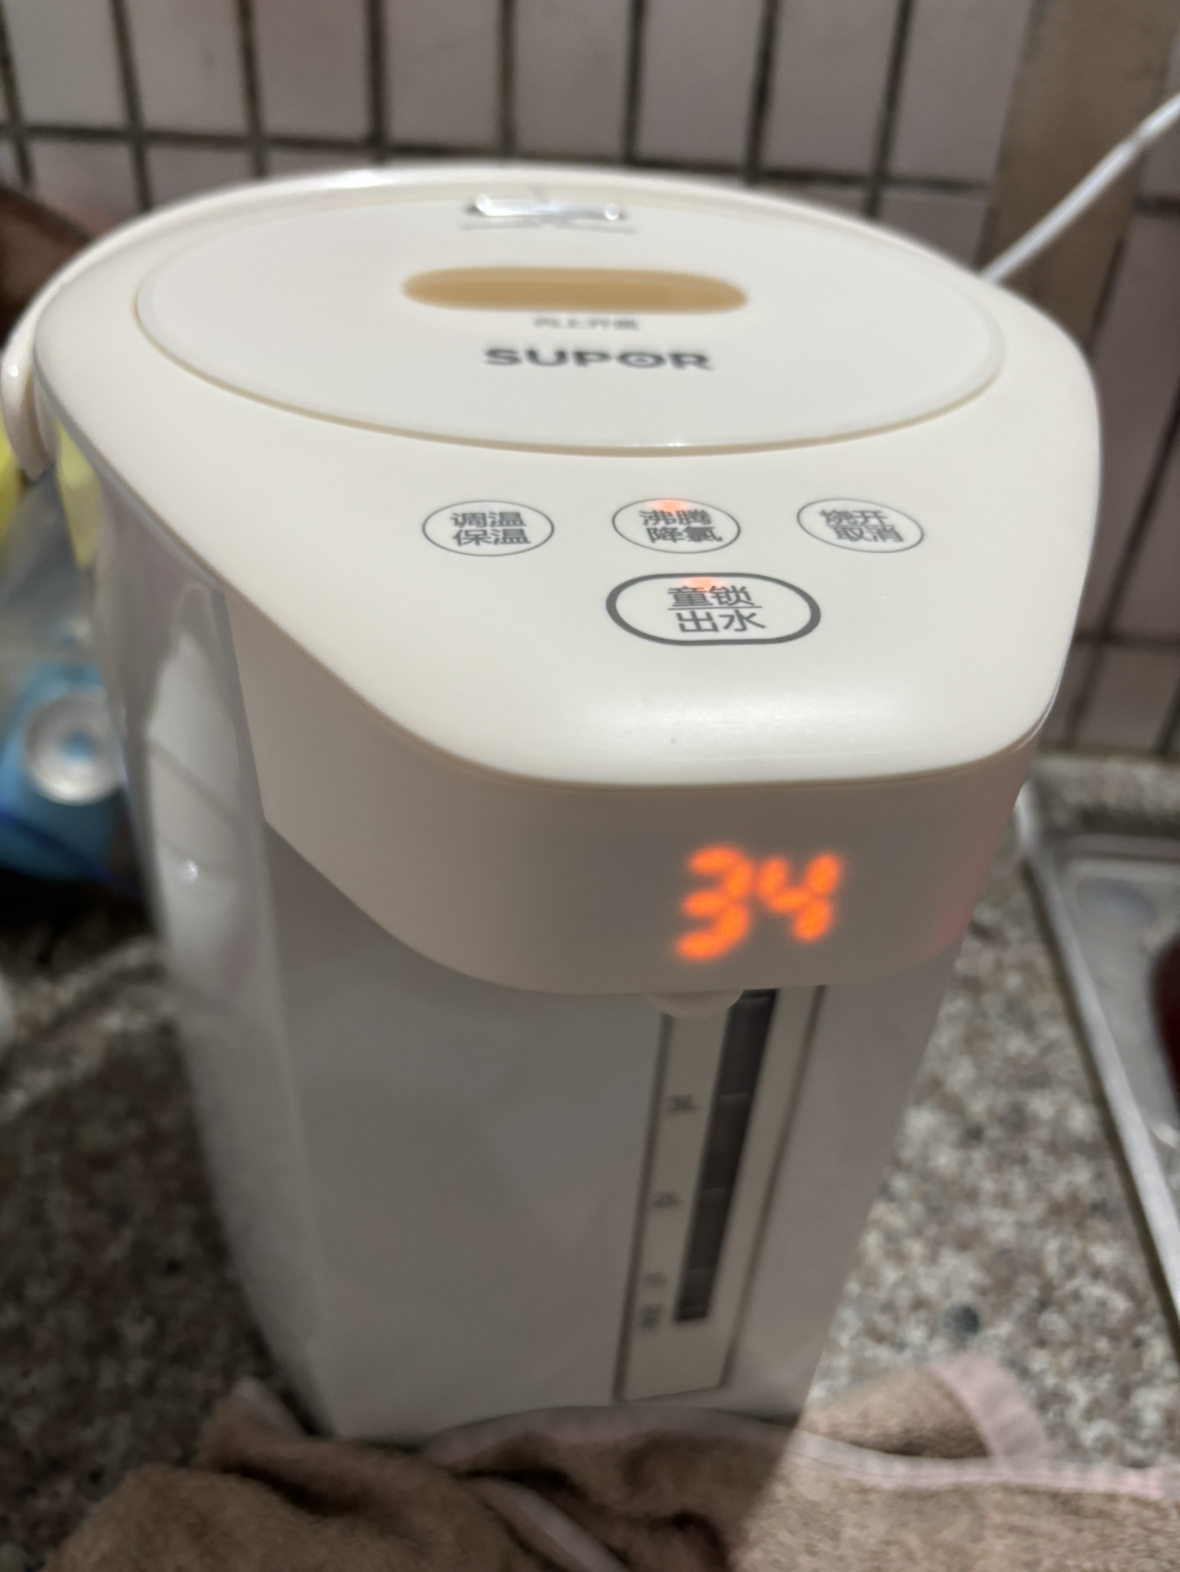 苏泊尔(SUPOR) 电热水瓶家用5L大容量大功率双模式煮水电热水壶保温水壶多段调温烧水器 SW-50T106晒单图